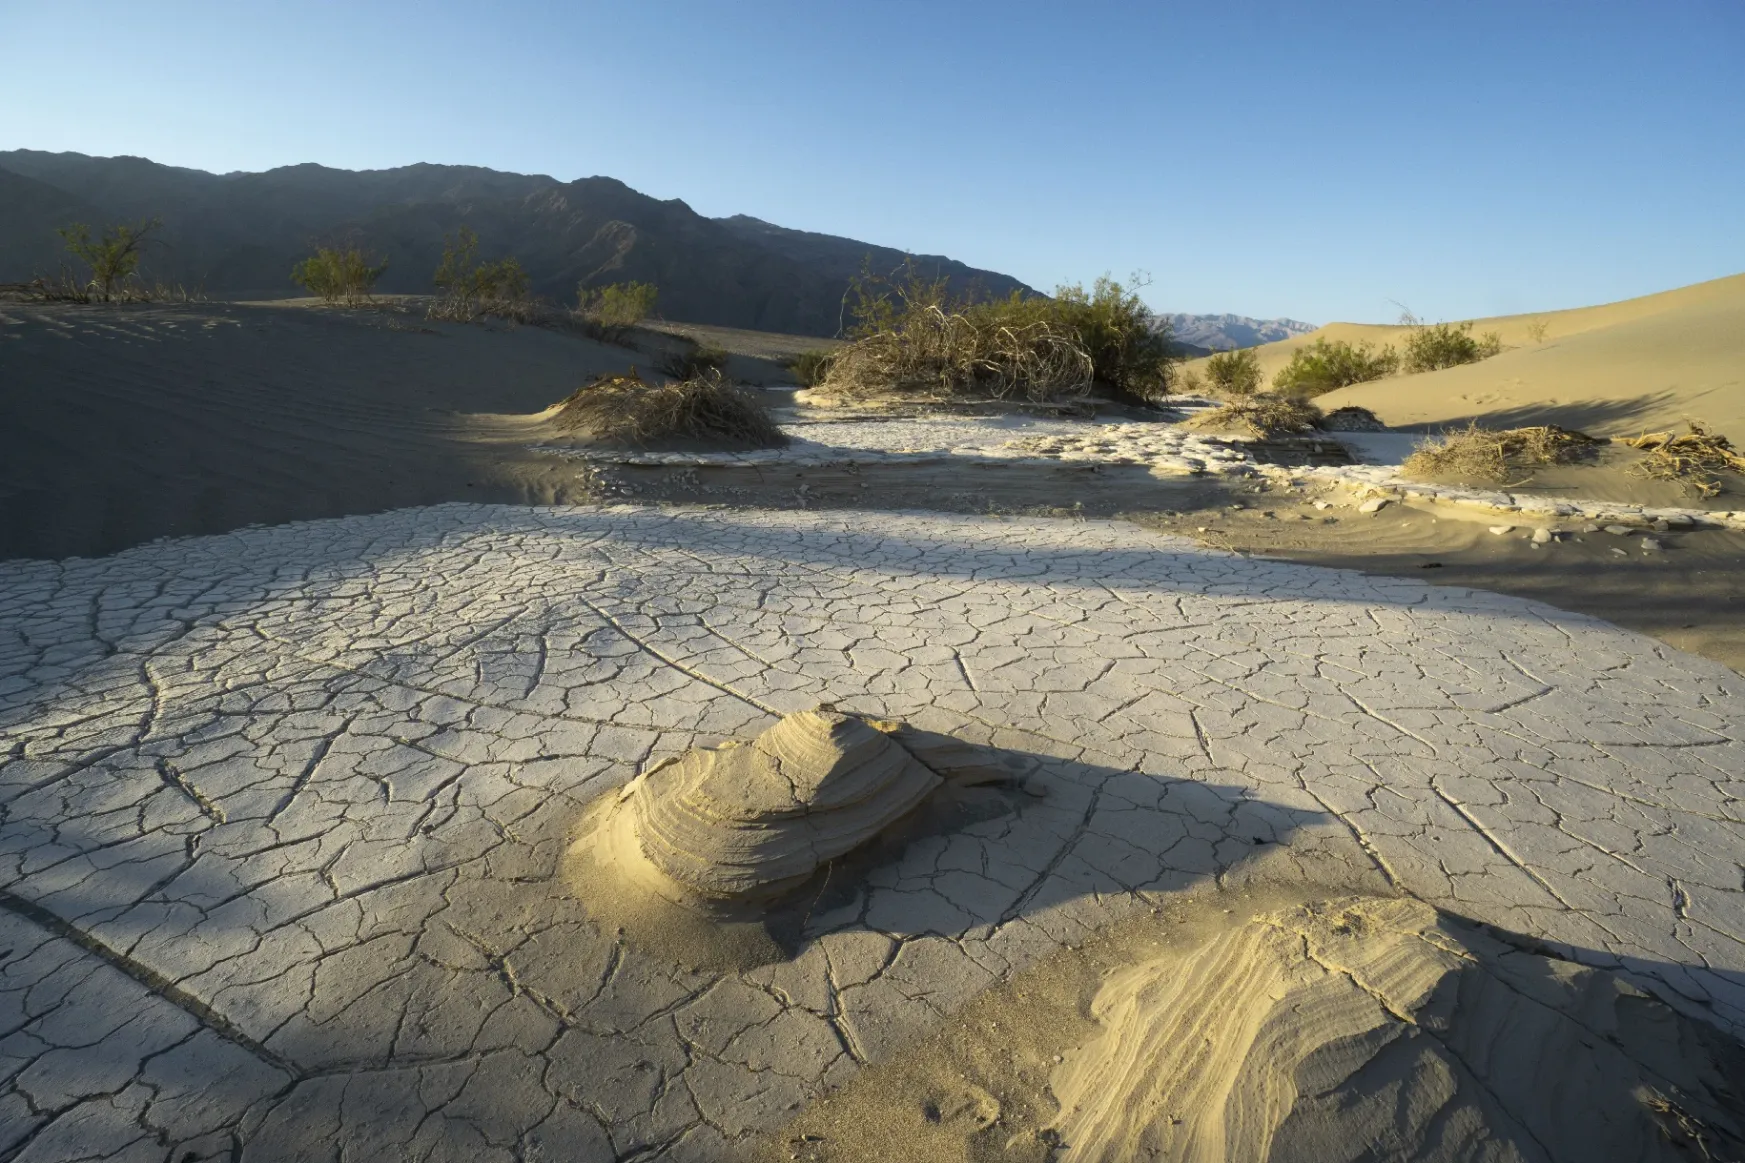 A legenda szerint 100 évente megjelenik egy tó a világ legforróbb sivatagában